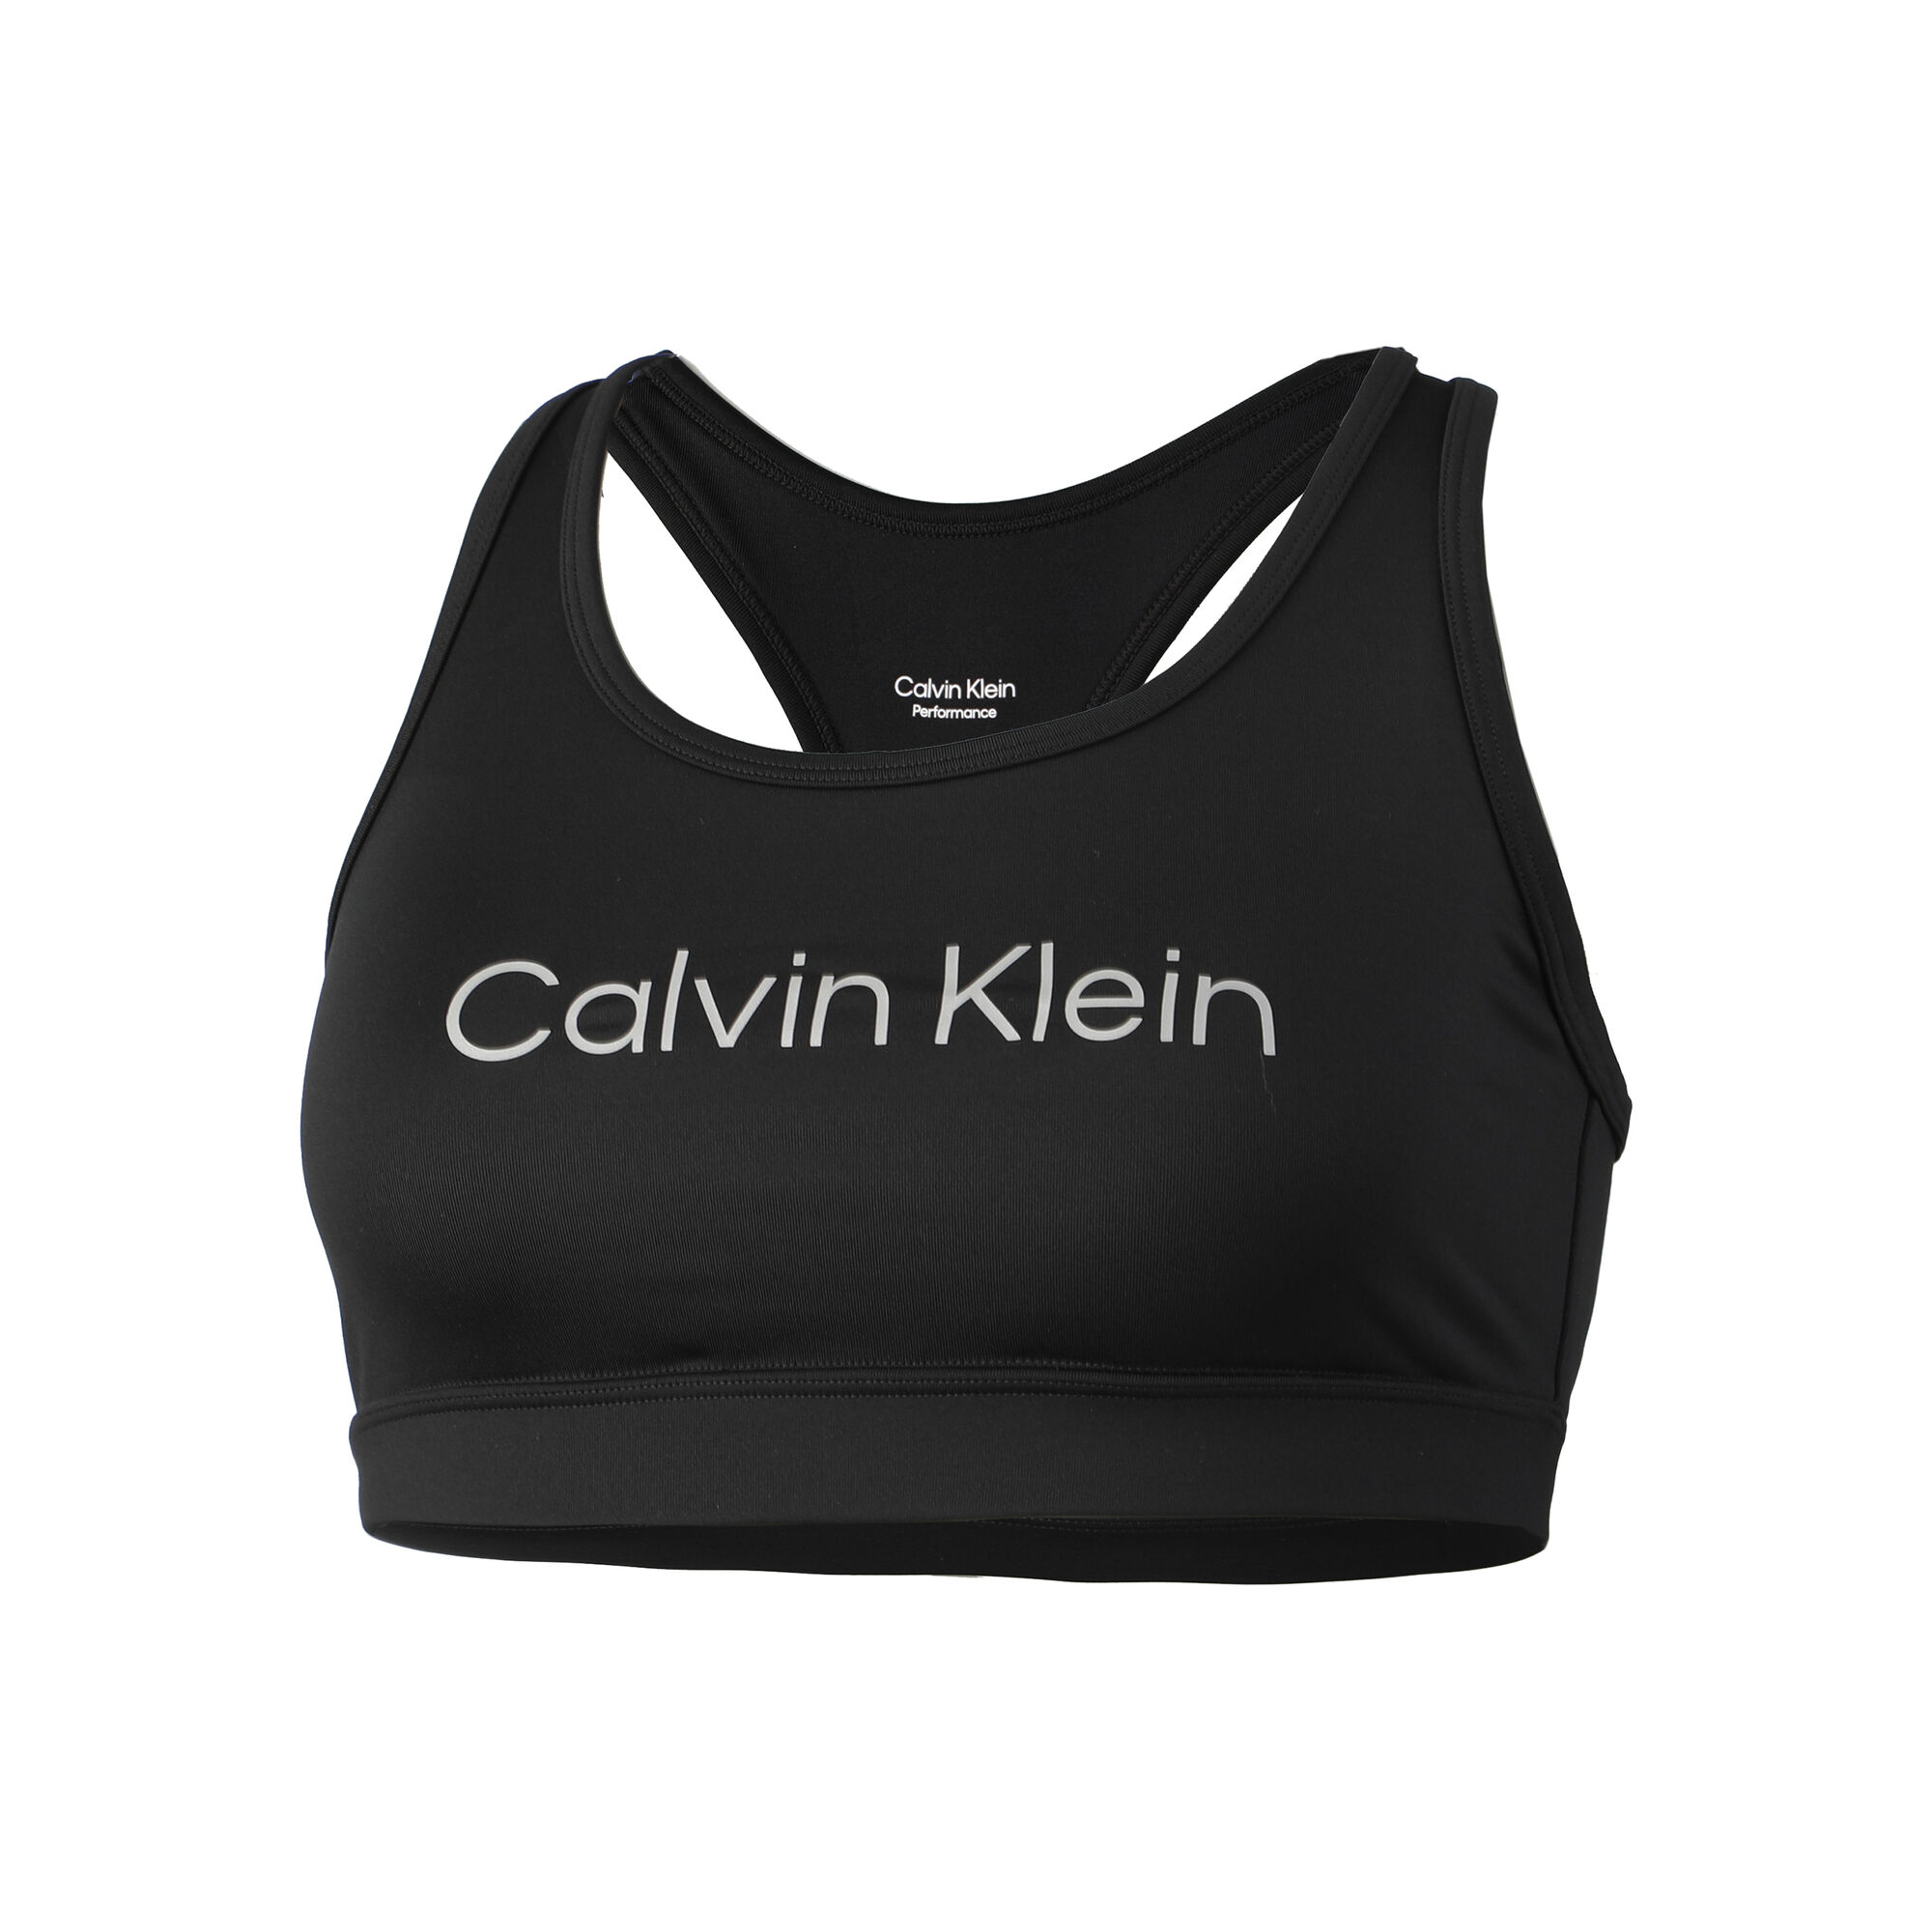 Buy Calvin Klein Medium Support Sports Bras Women Black online